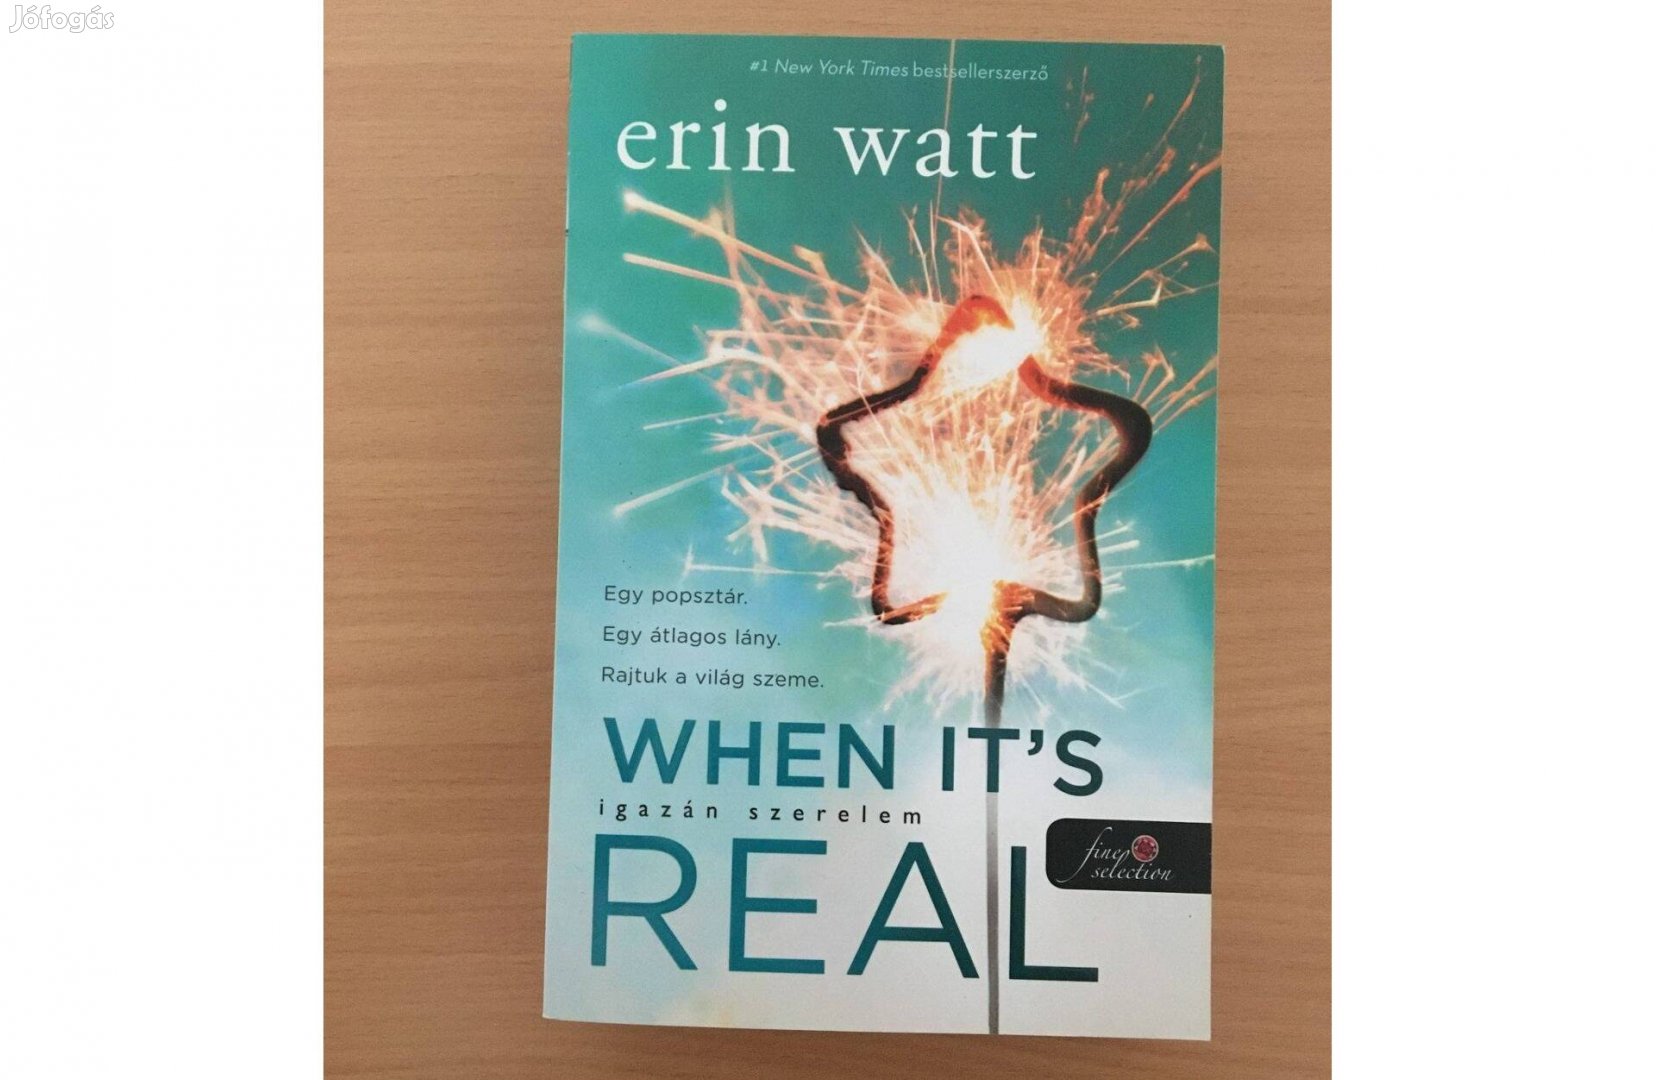 Erin Watt: When it's real - Igazán szerelem című könyv